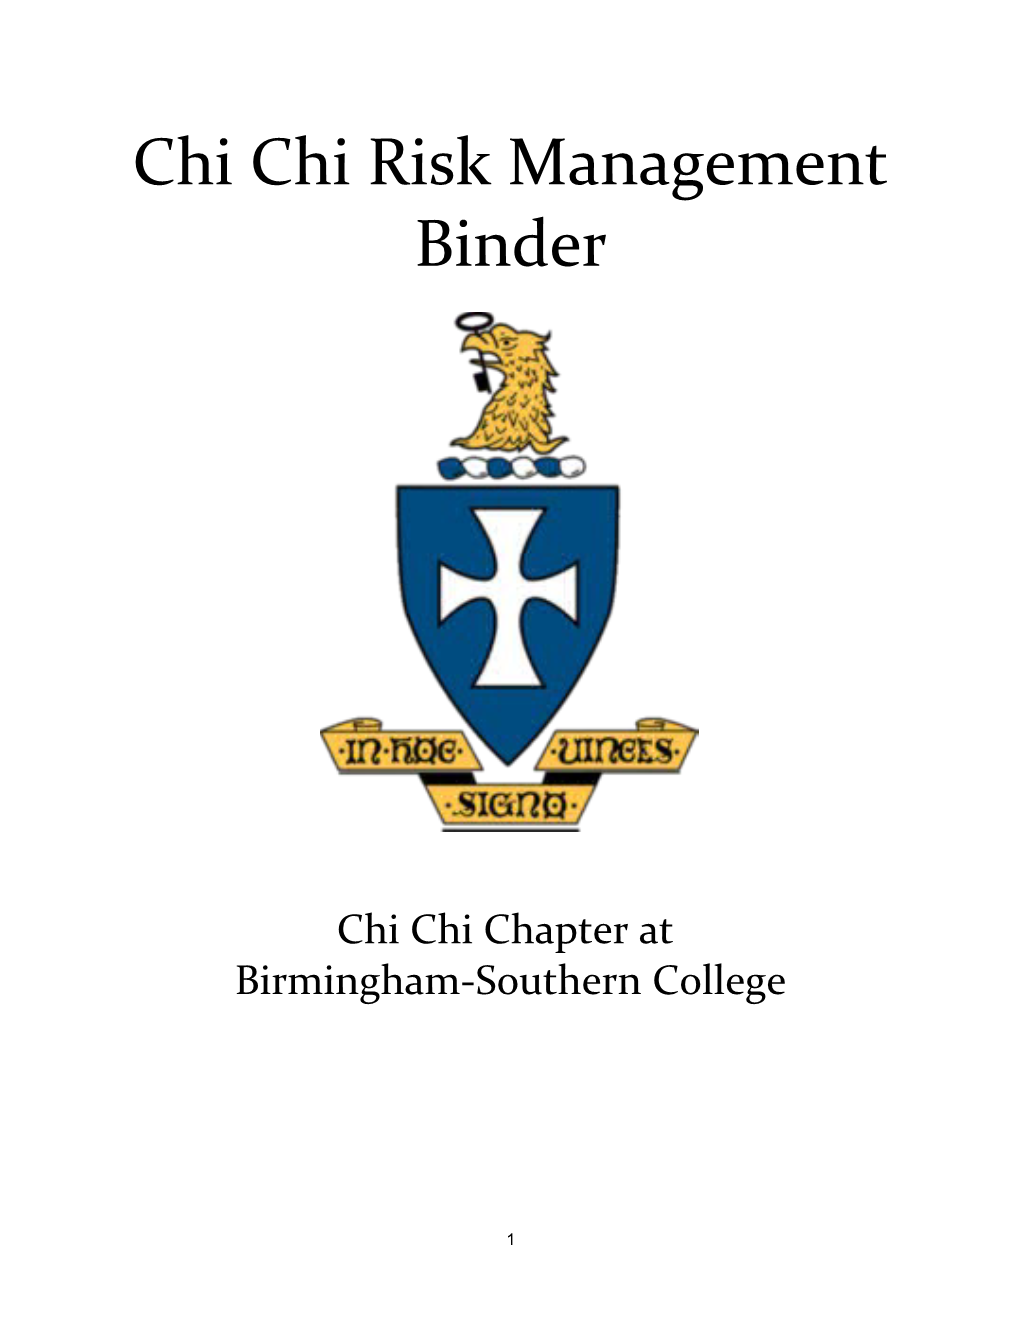 Chi Chi Risk Management Binder